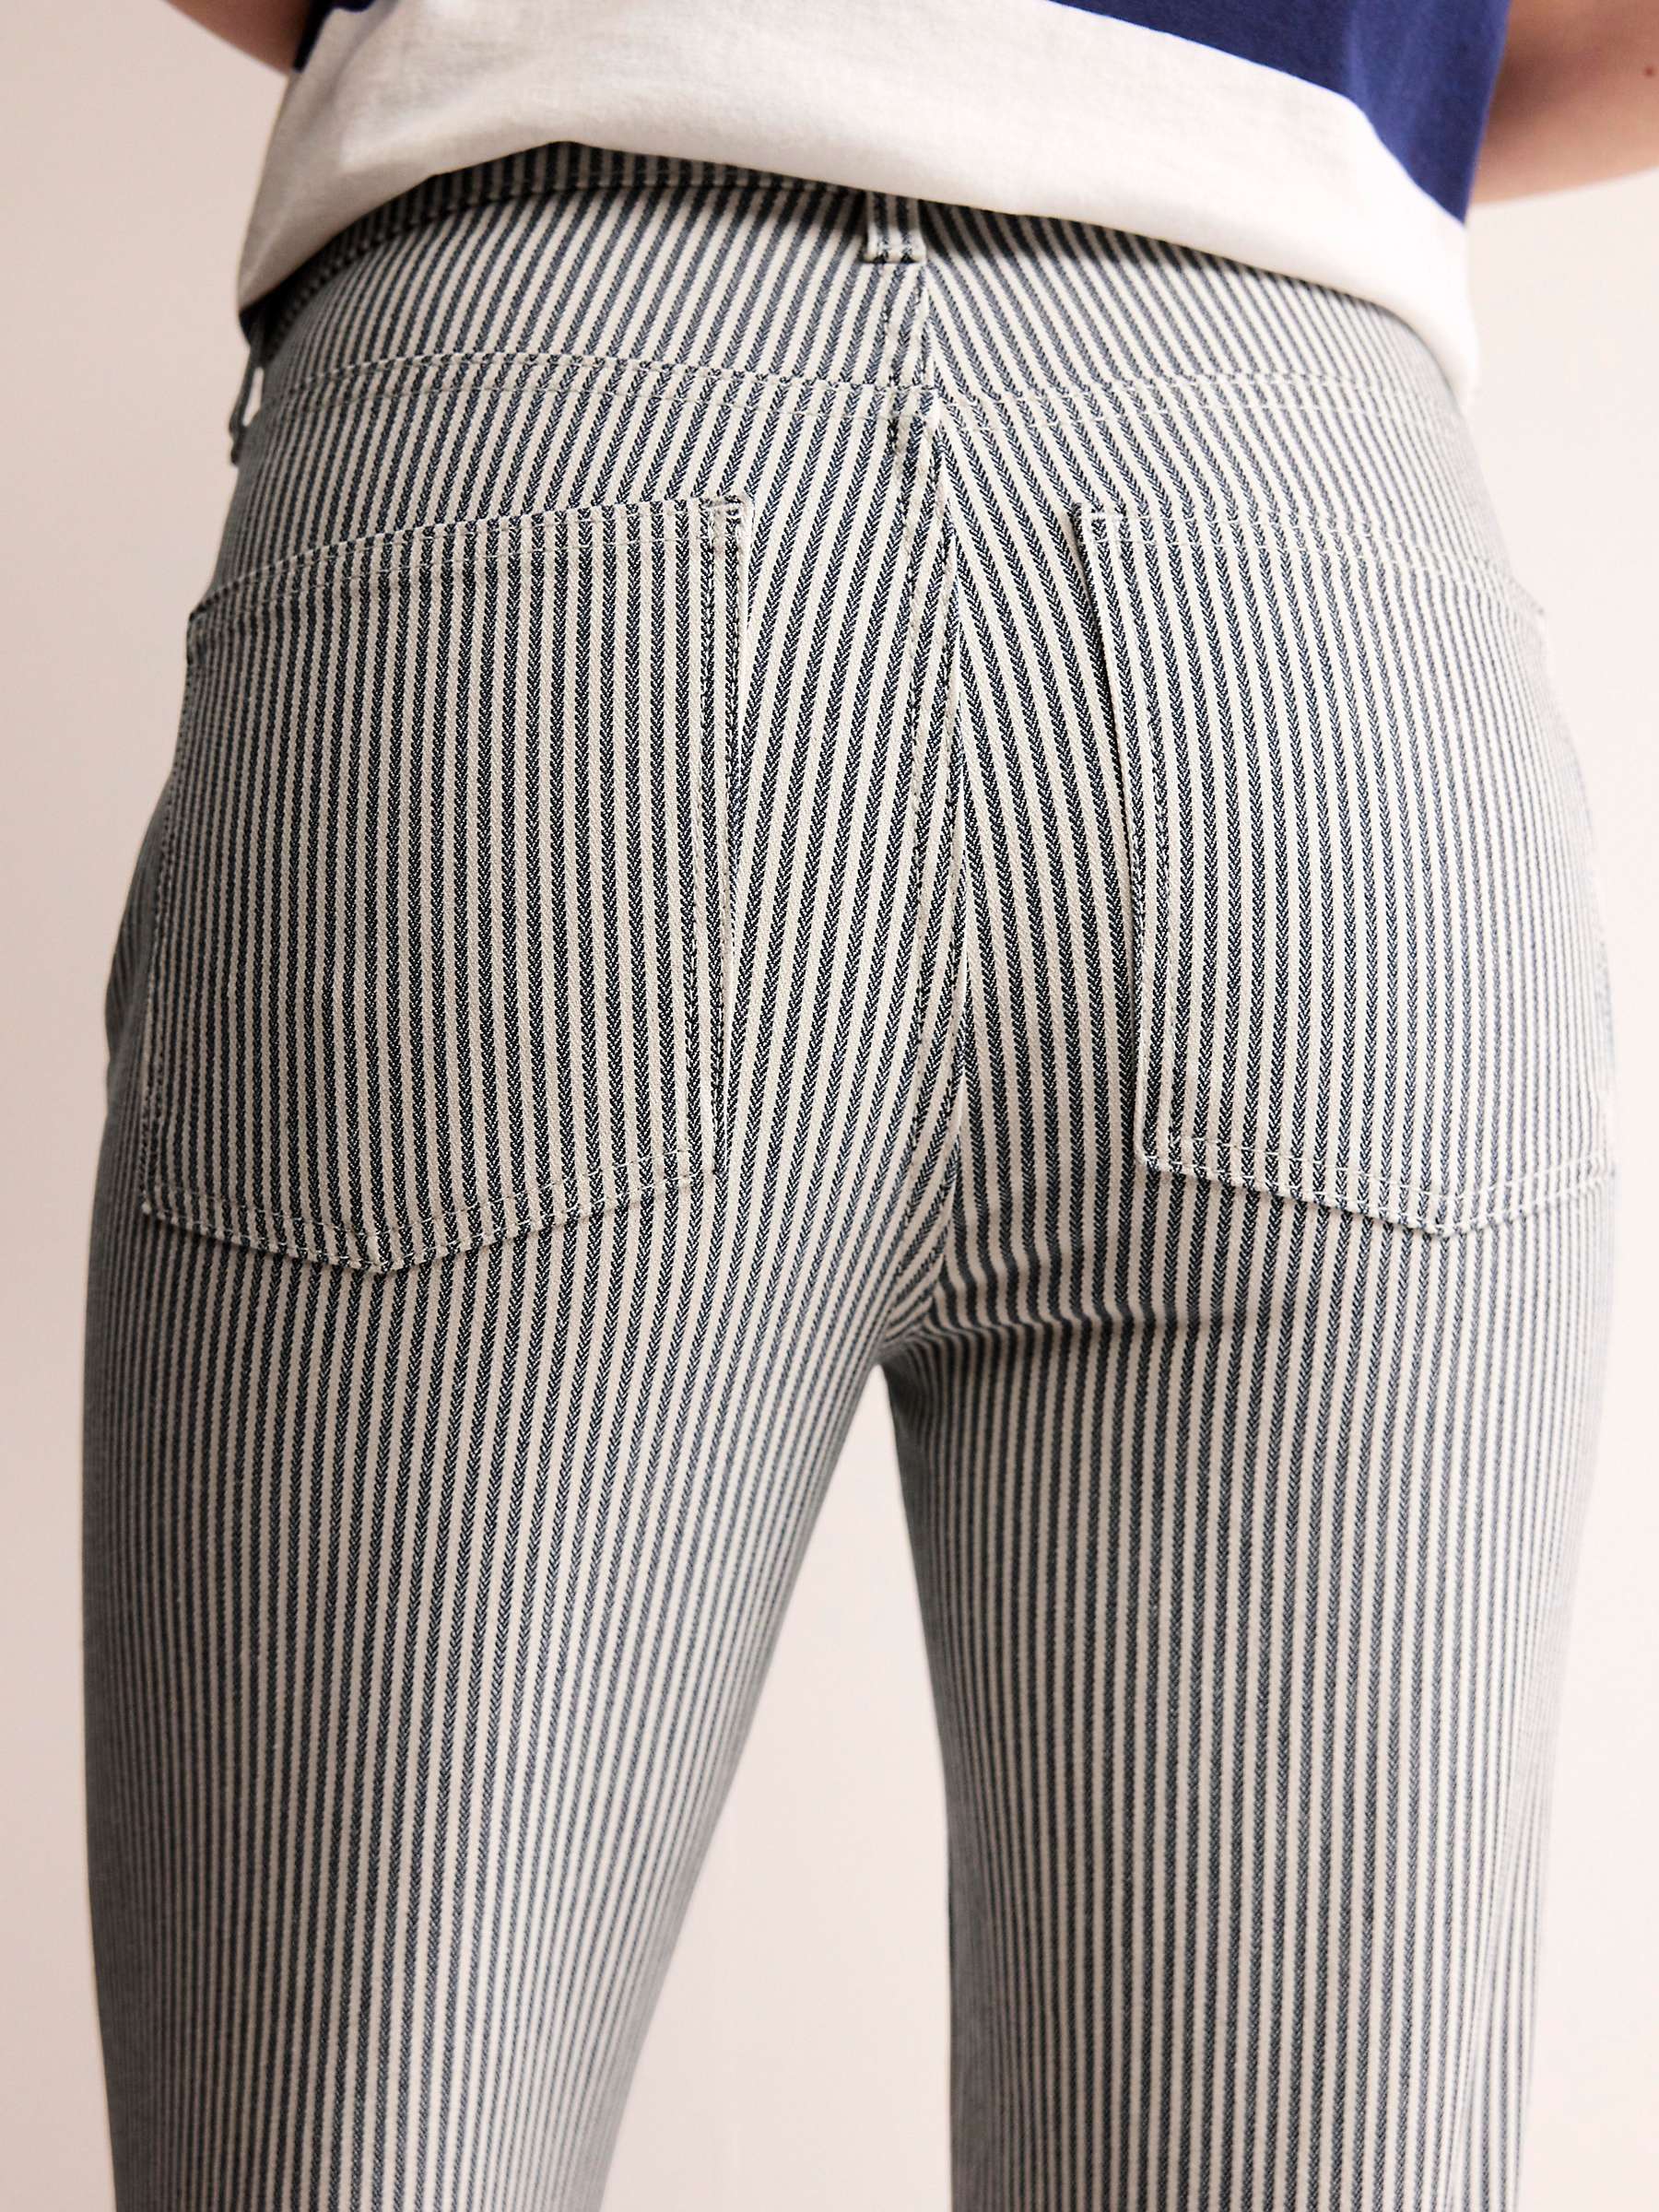 Buy Boden Mid Rise Slim Leg Stripe Jeans, White/Black Online at johnlewis.com